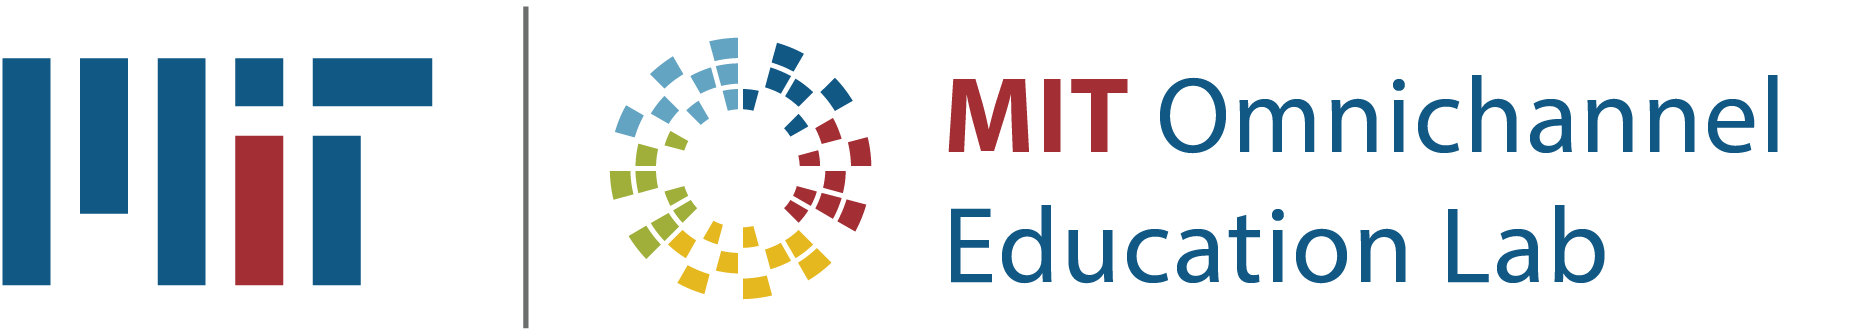 MIT Omnichannel Education Lab